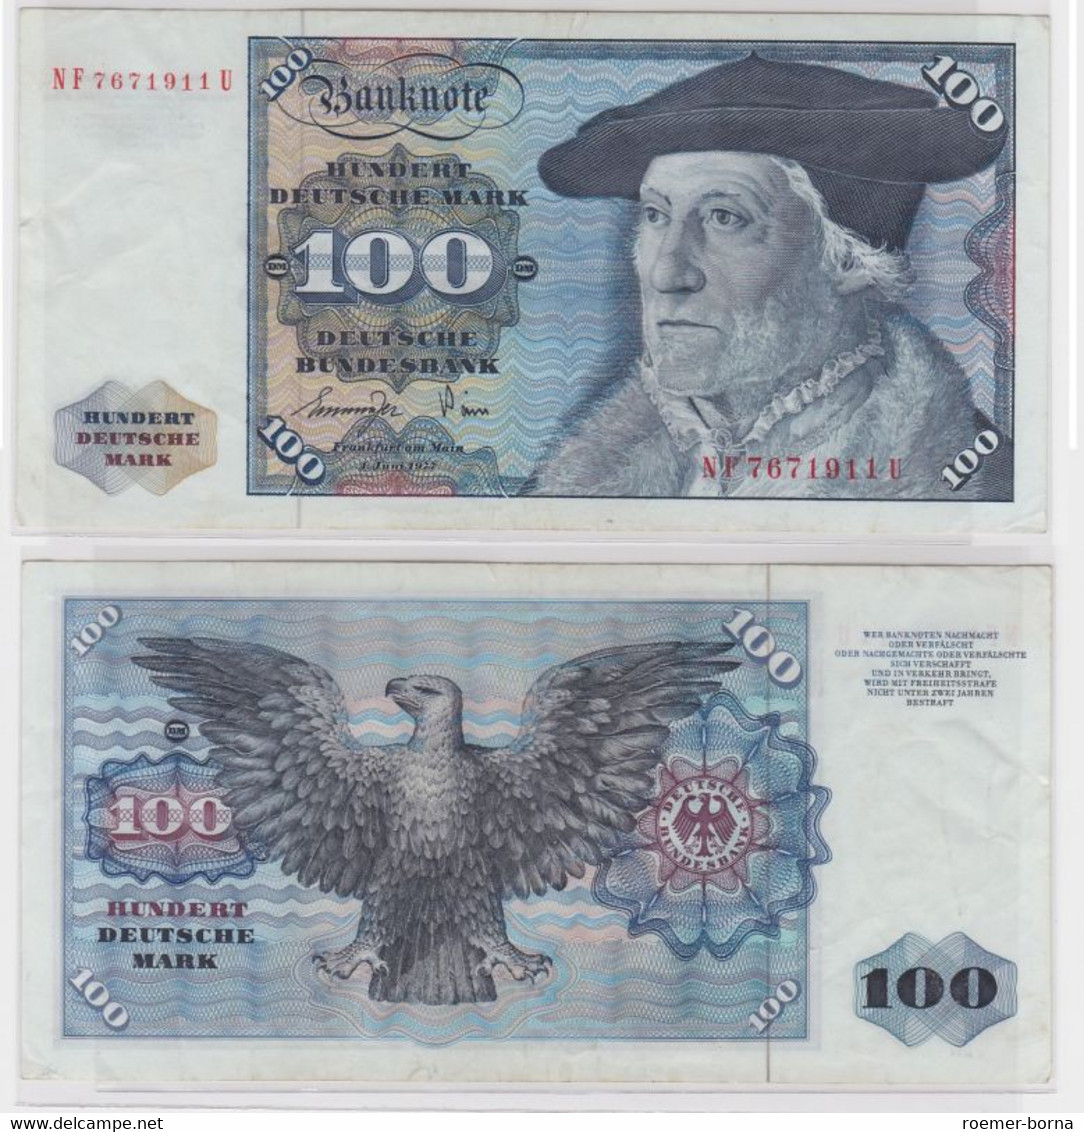 T146731 Banknote 100 DM Deutsche Mark Ro 278a Schein 1.Juni 1977 KN NF 7671911 U - 100 DM